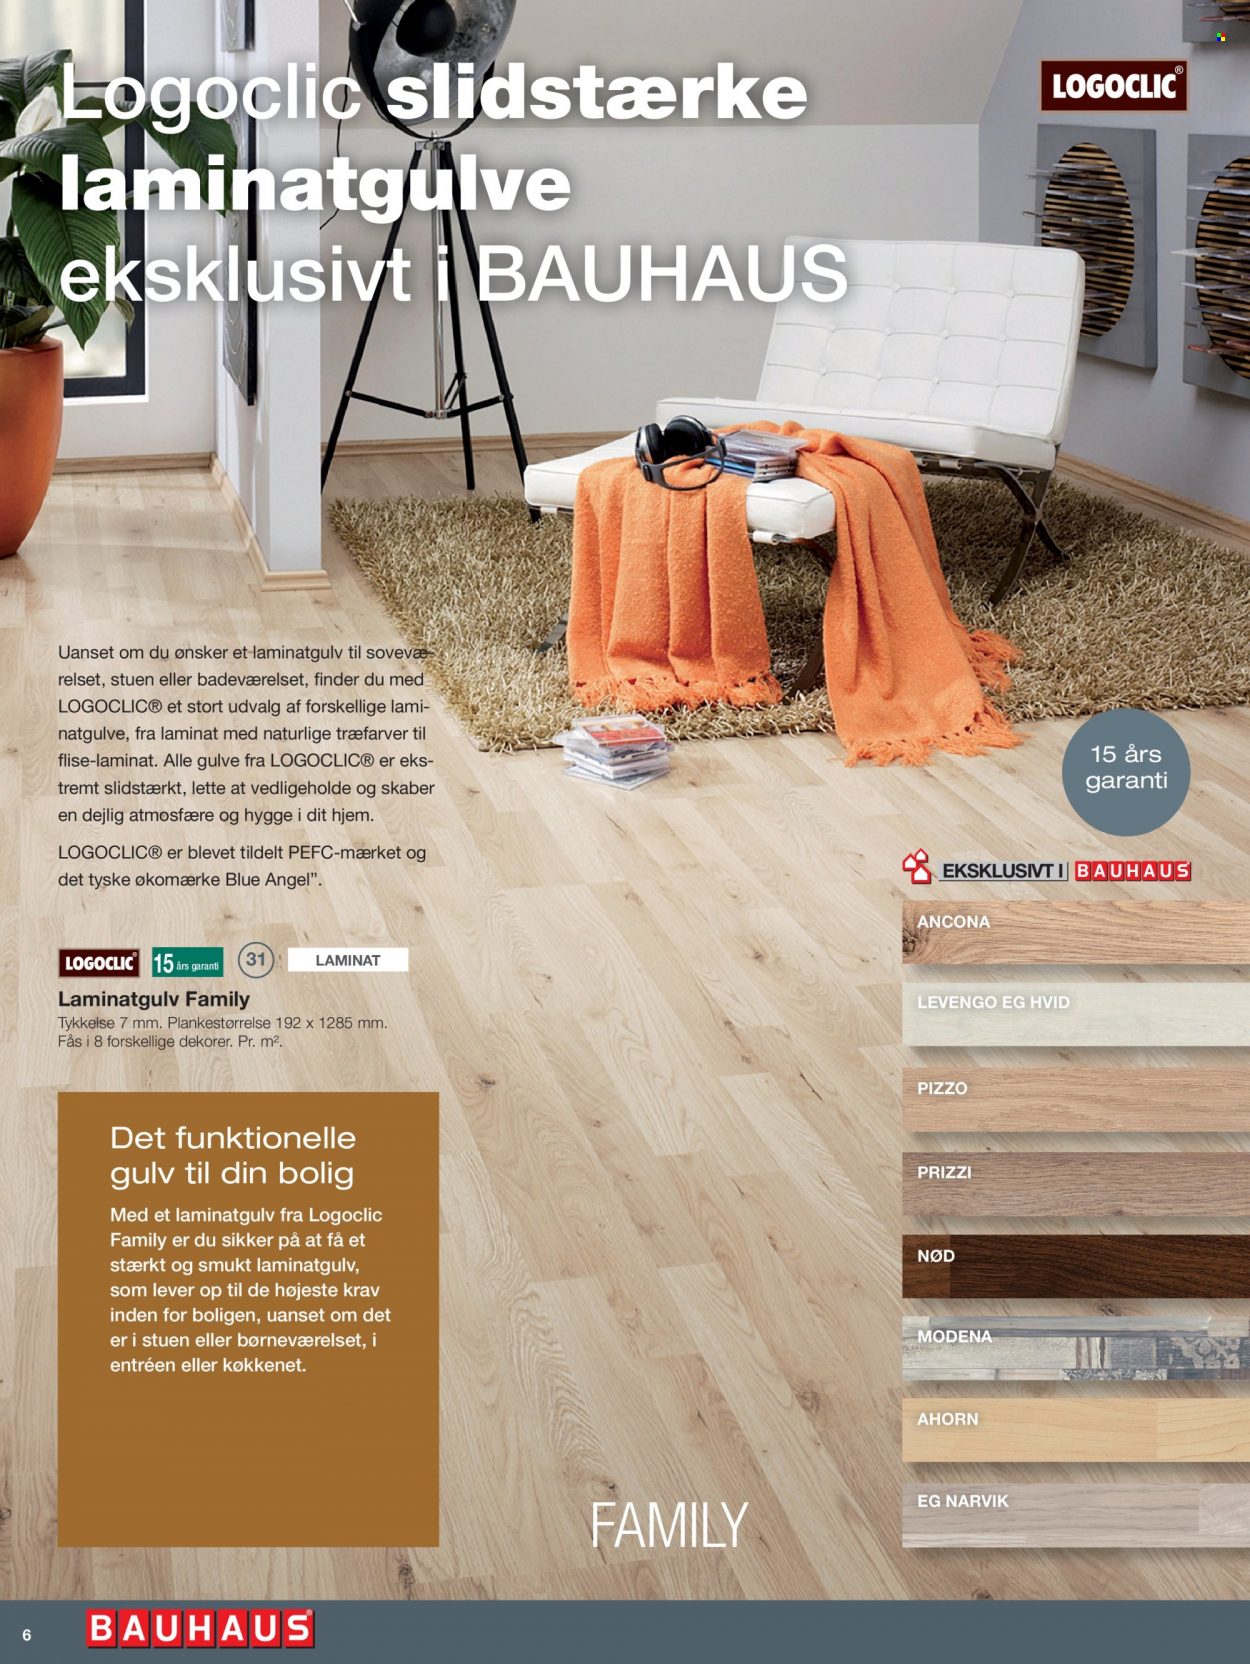 Bauhaus tilbud  - tilbudsprodukter - laminatgulv, flise. Side 6.